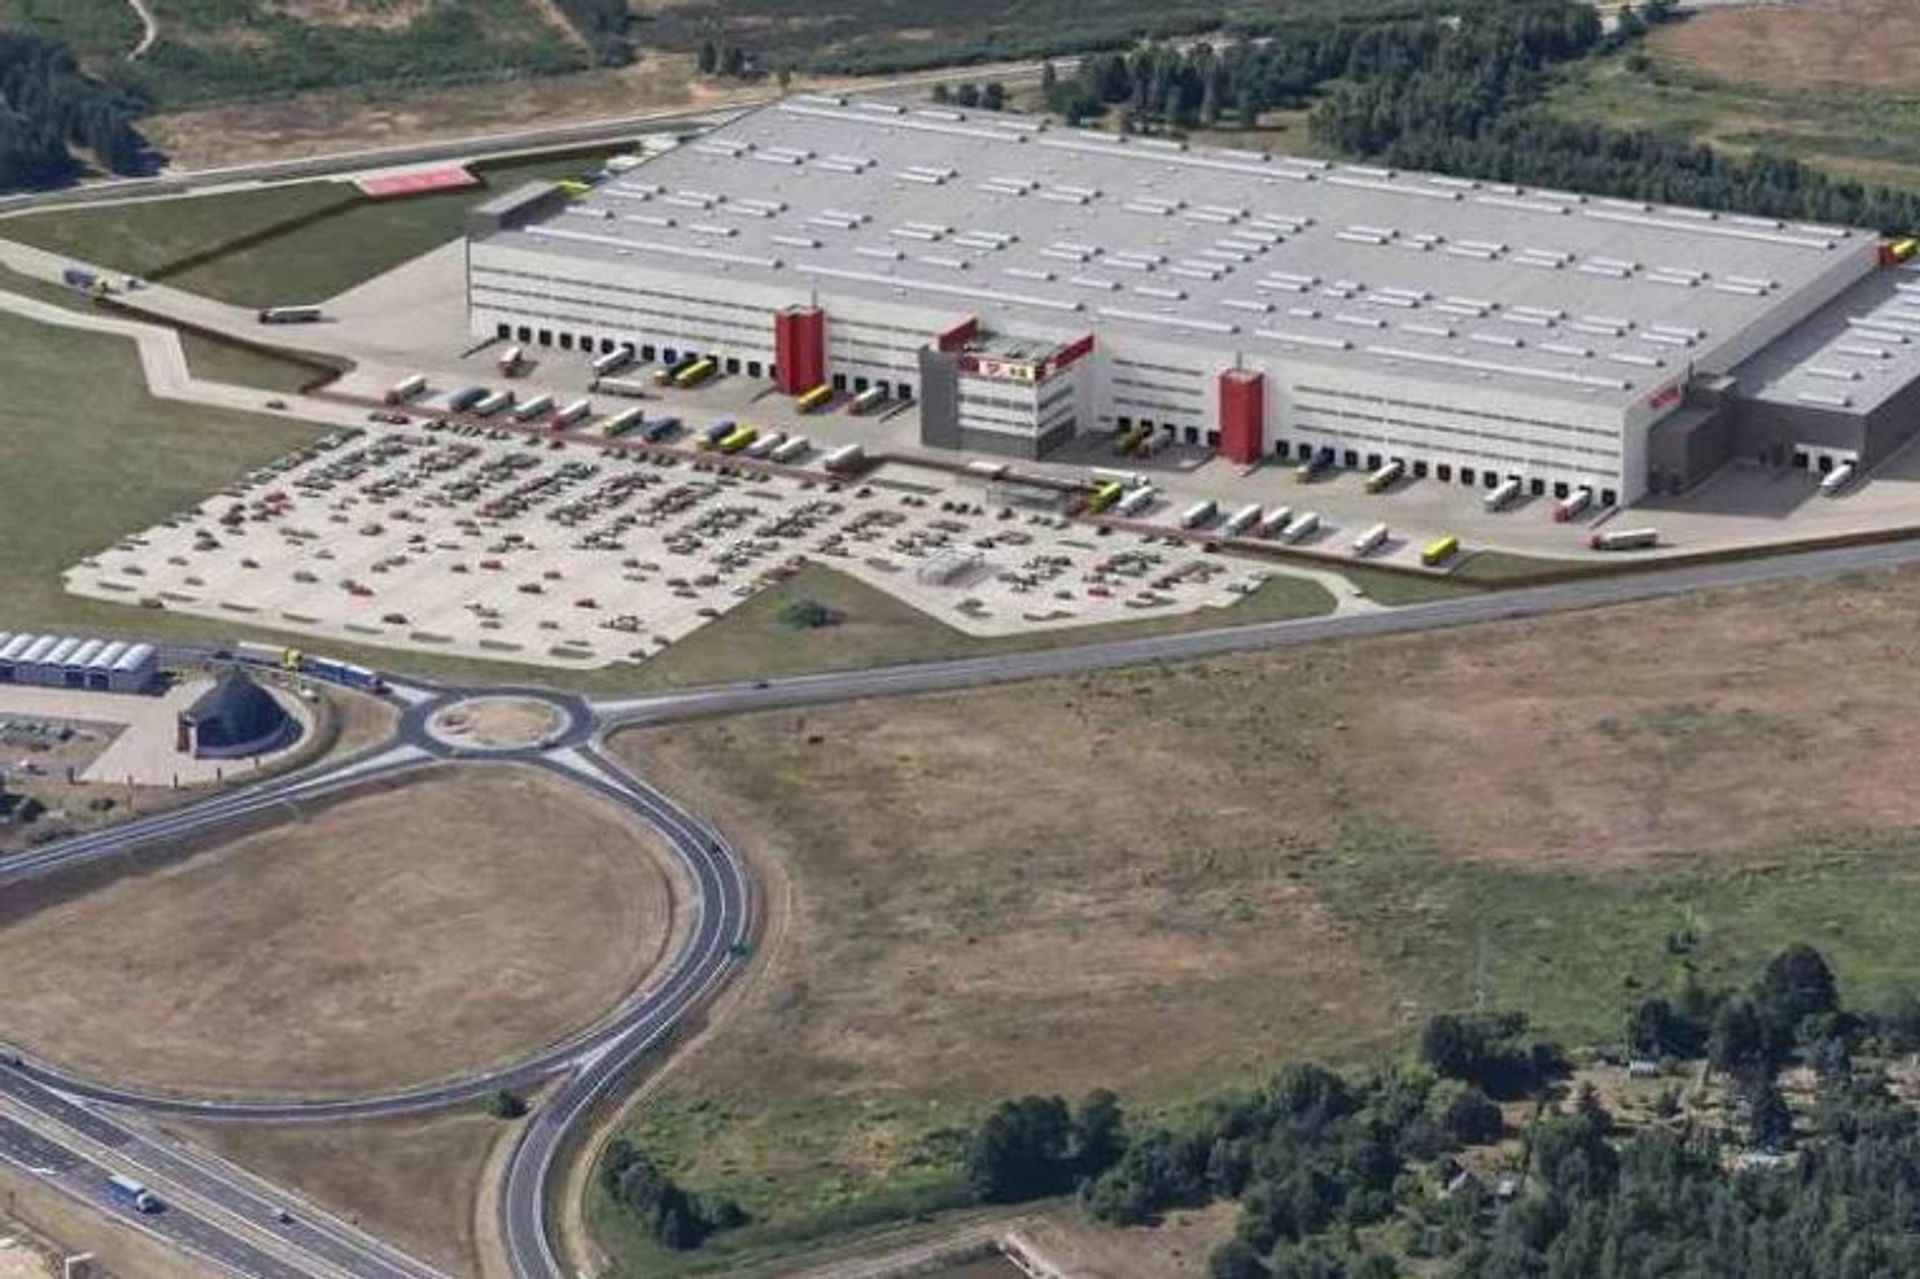 Wkrótce otwarcie gigantycznego centrum dystrybucyjnego TK Maxx w Sulechowie. Powstanie 1000 miejsc pracy!